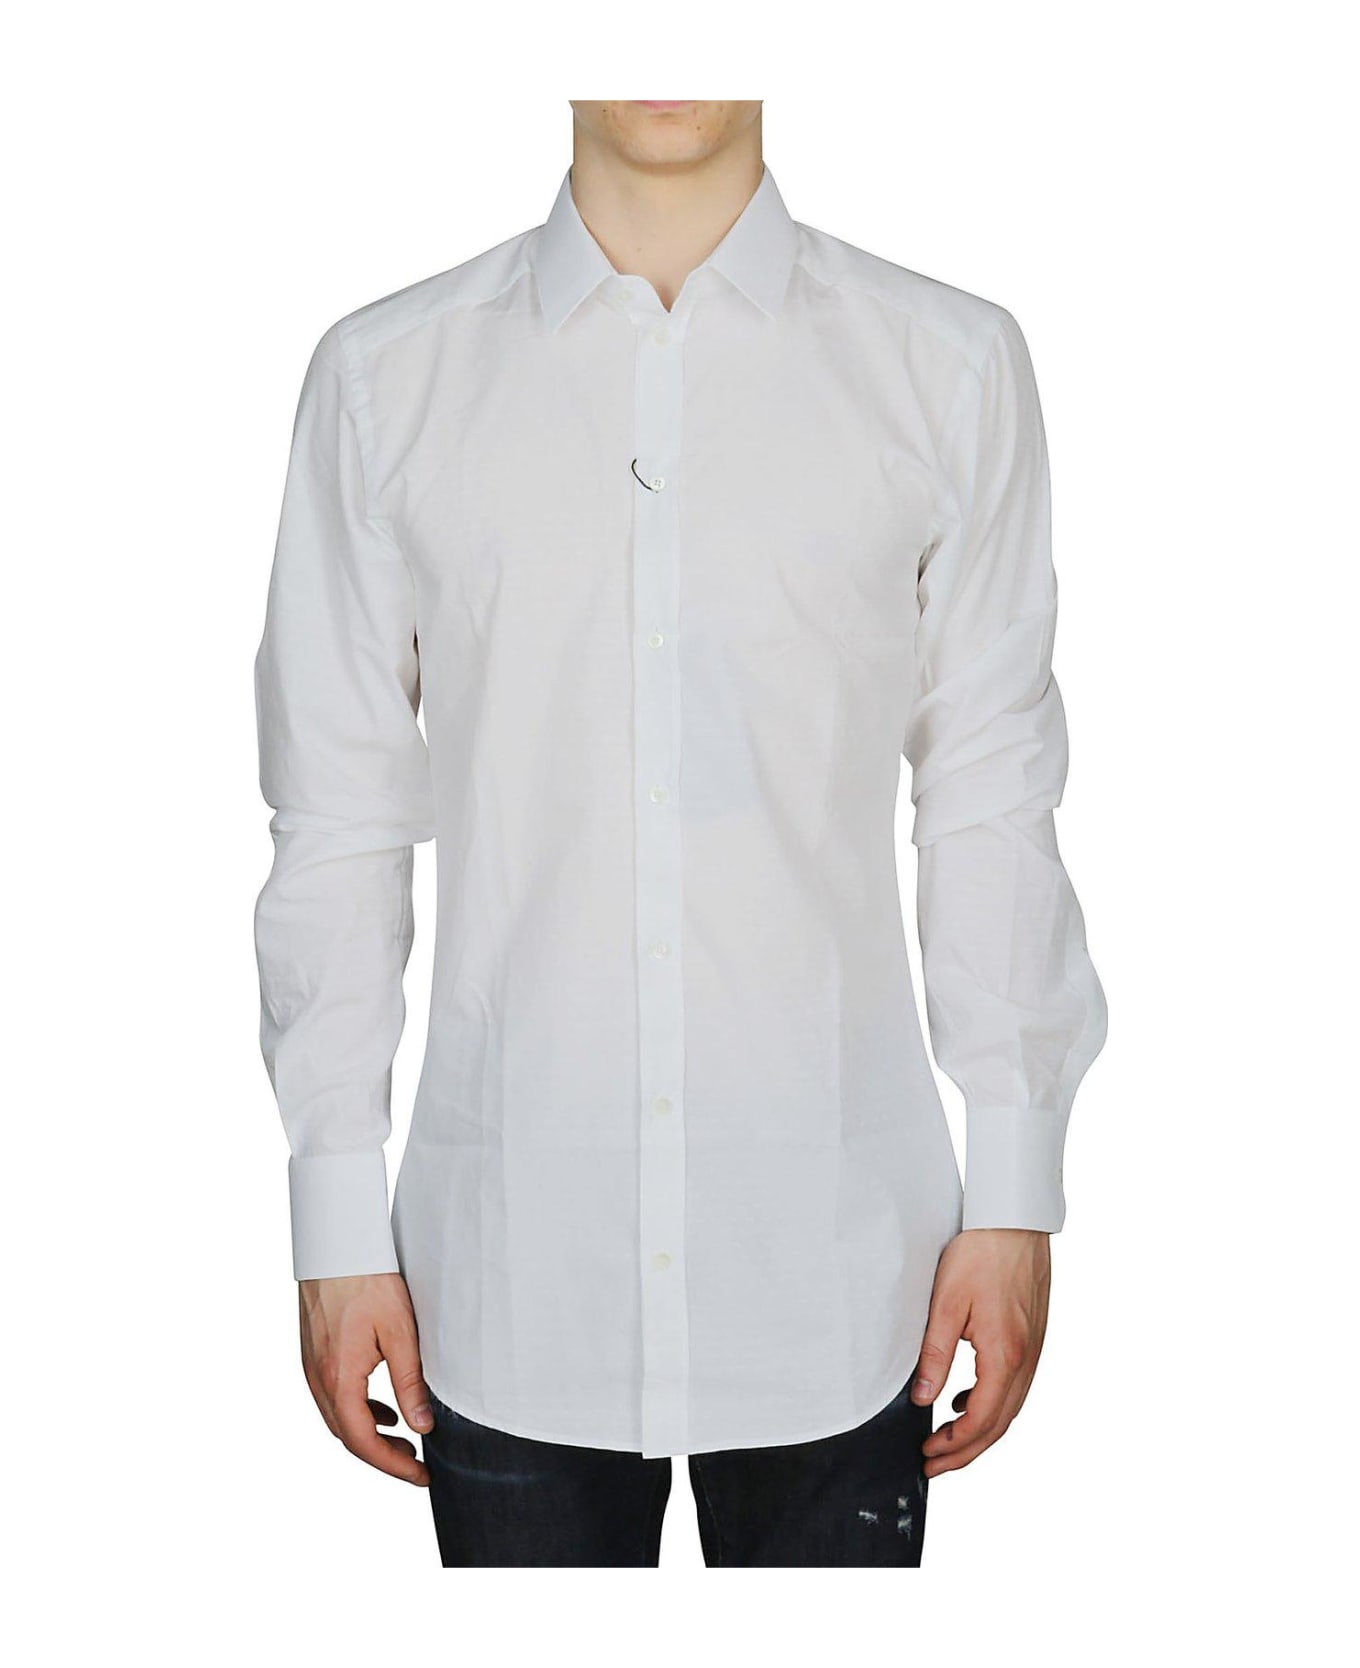 Dolce & Gabbana Jacquard Logo Tailored Shirt - Bianco シャツ